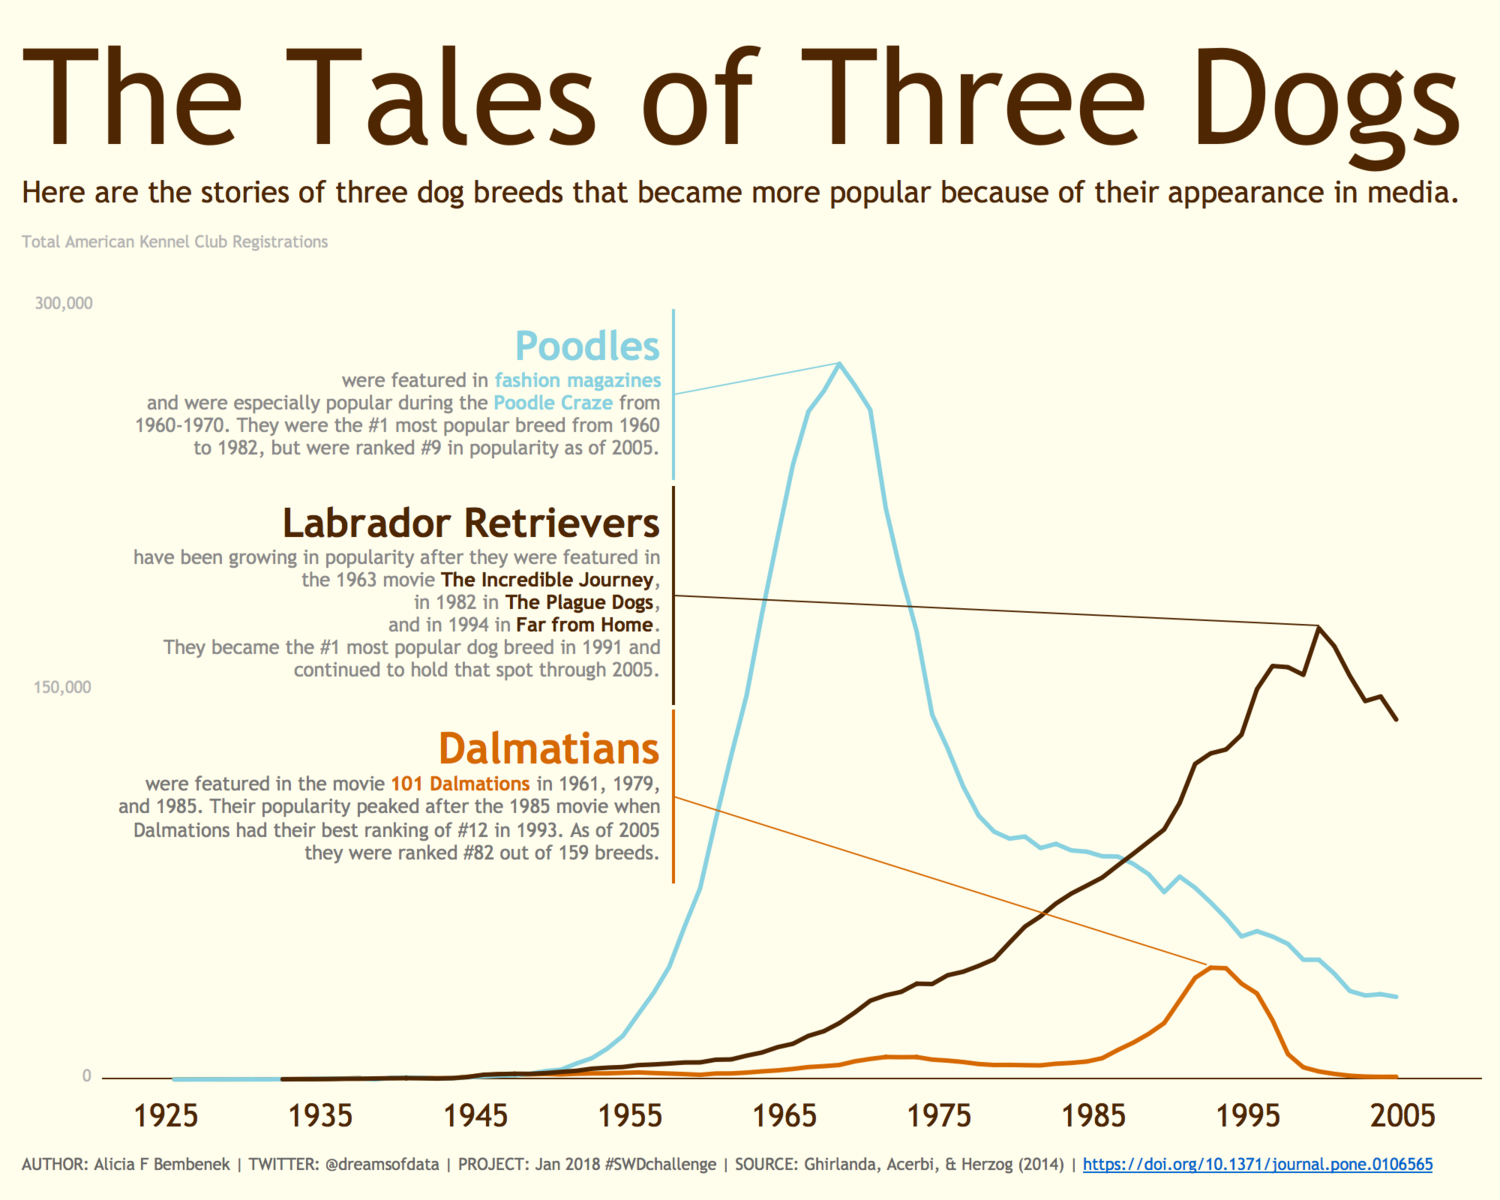 Annotationen im Diagramm als Legende für die drei Datenreihen und kleine Datengeschichten